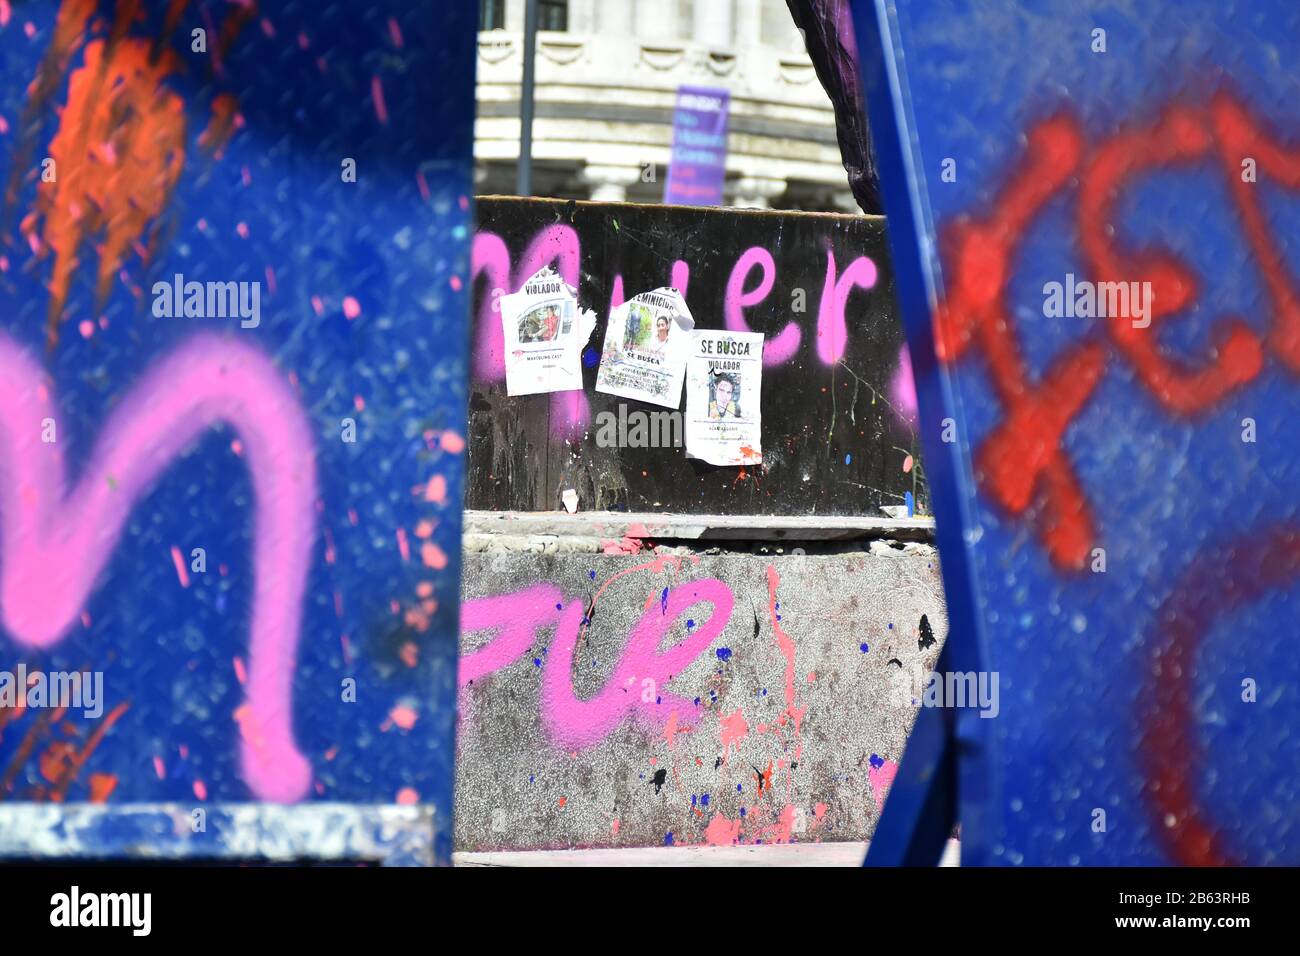 Ciudad De México, México. 9 de marzo de 2020. Las empresas, las y los monumentos históricos sufrieron graves daños con cristales rotos, puertas quemadas, graffiti de mujeres durante la marcha para